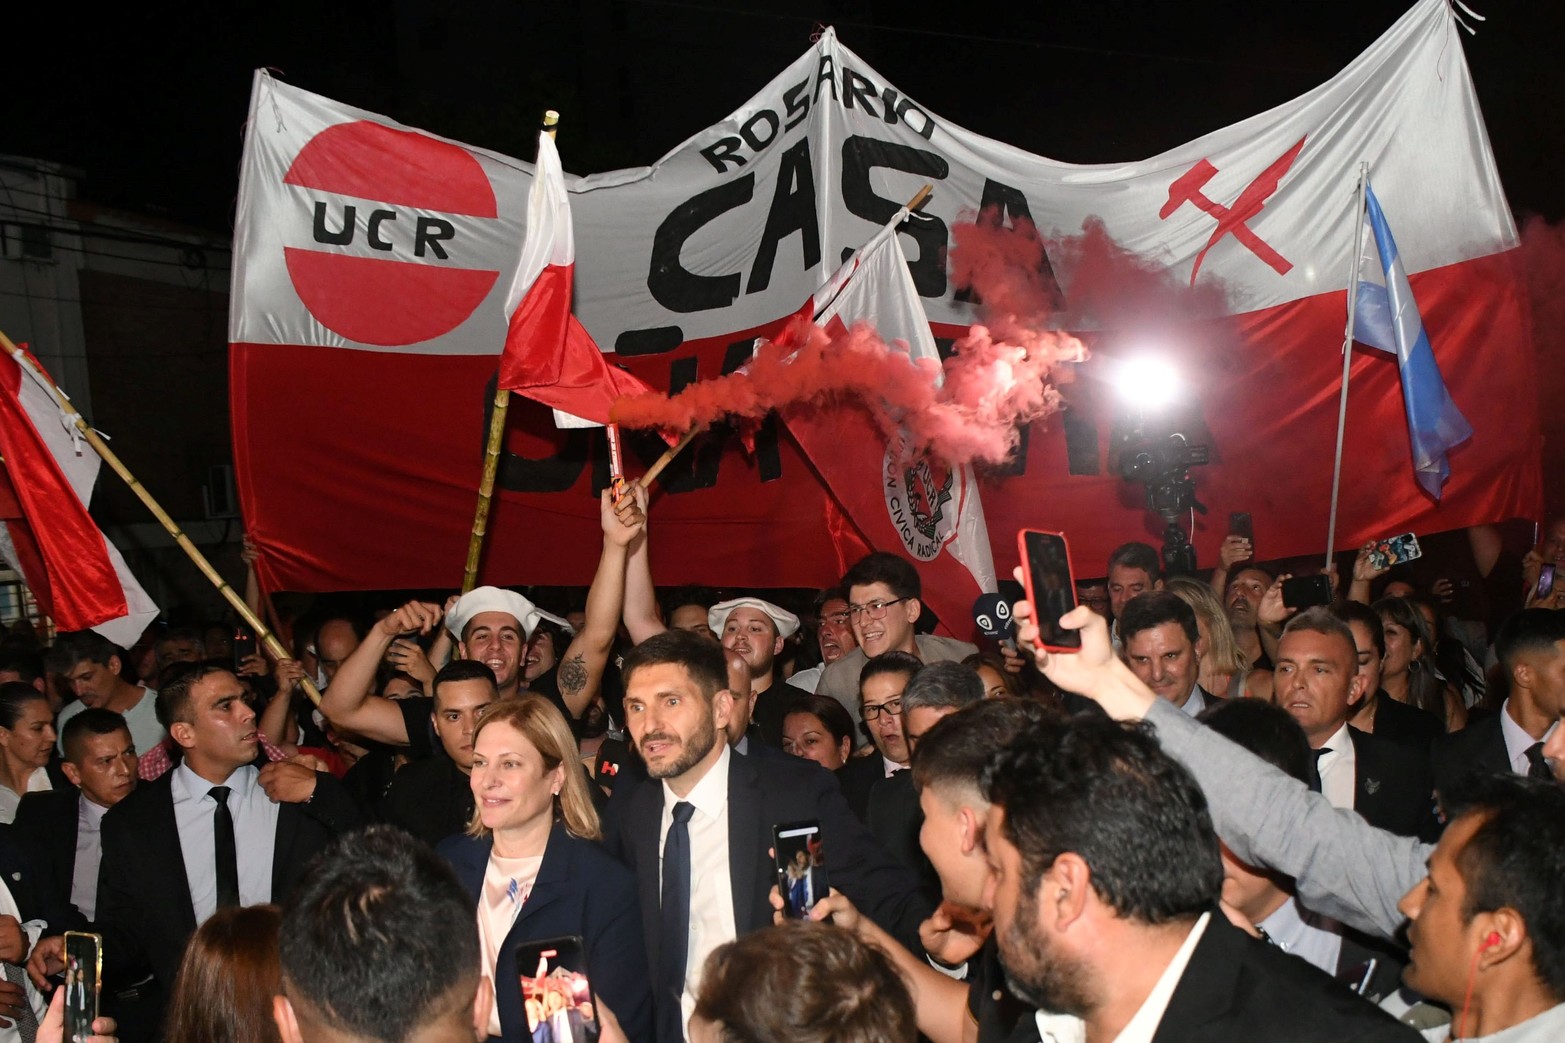 Con banderas roja y blancas la UCR vuelve a gobernar la provincia luego de 60 años.  Foto Manuel Fabatía